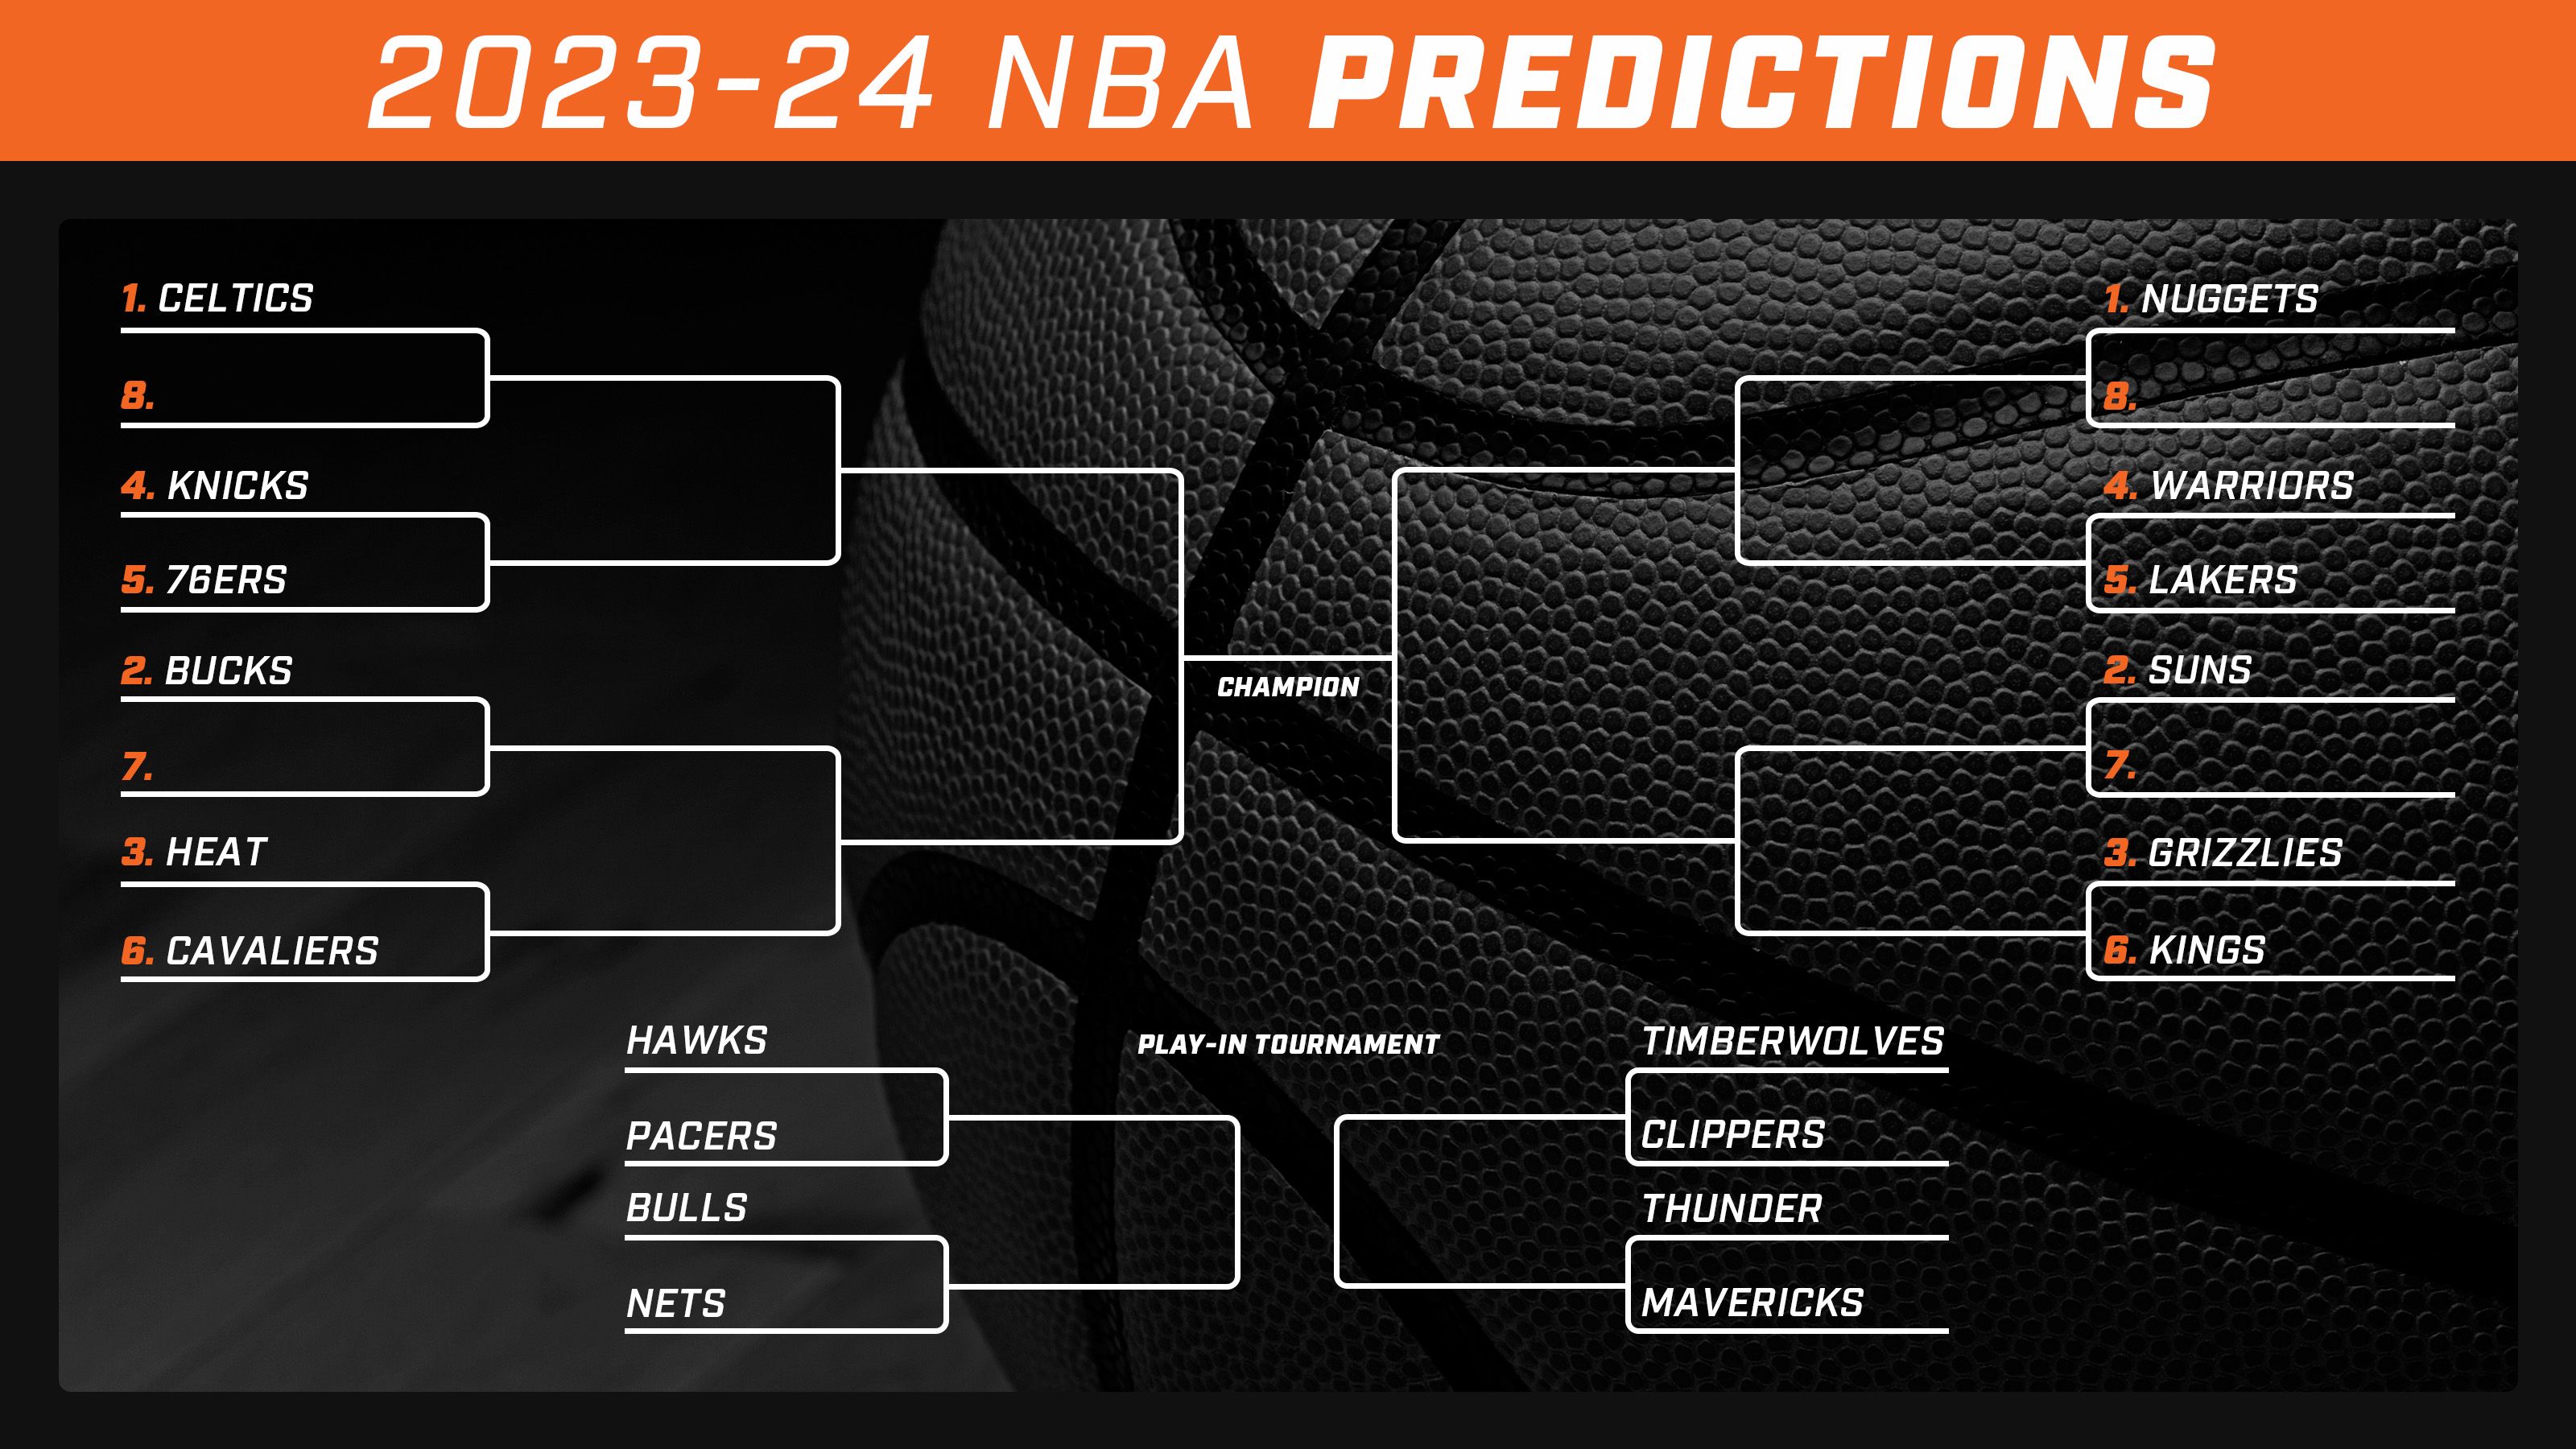 Final Predictions